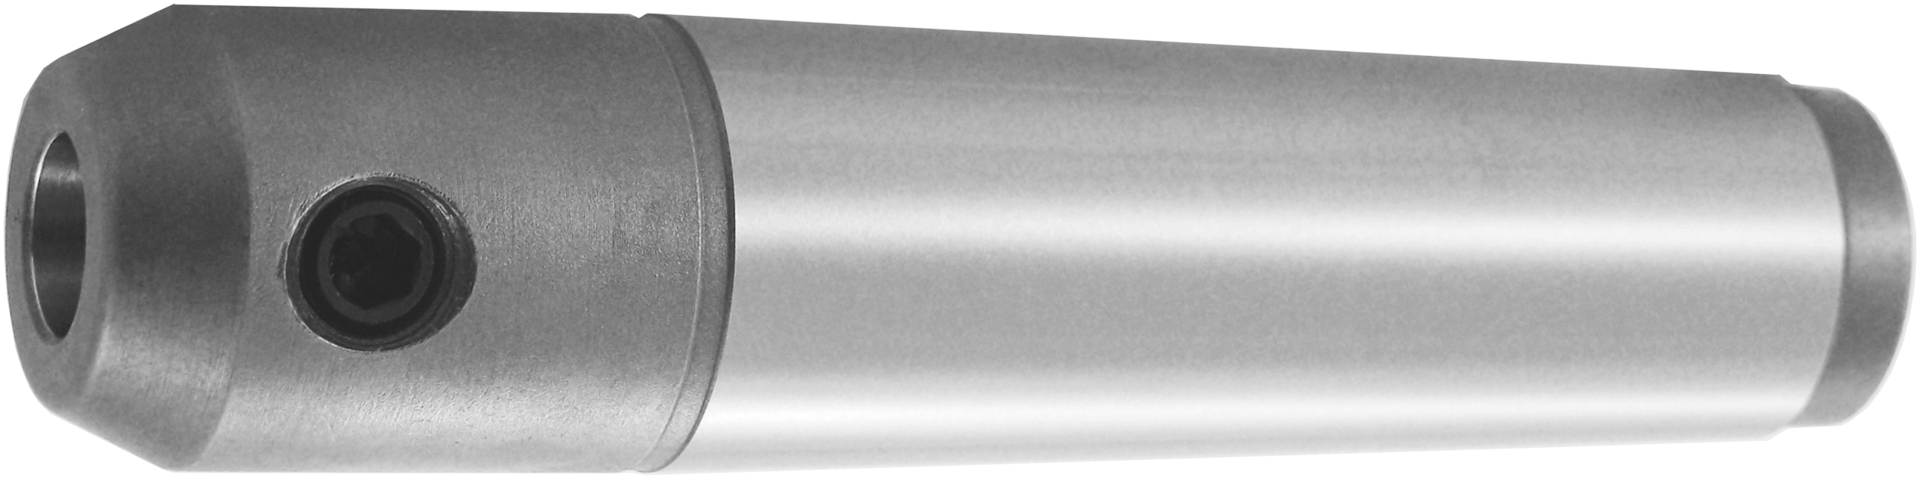 Aufnahme Zylinderschaft Weldon Form A DIN228 MKxD 3X10mm